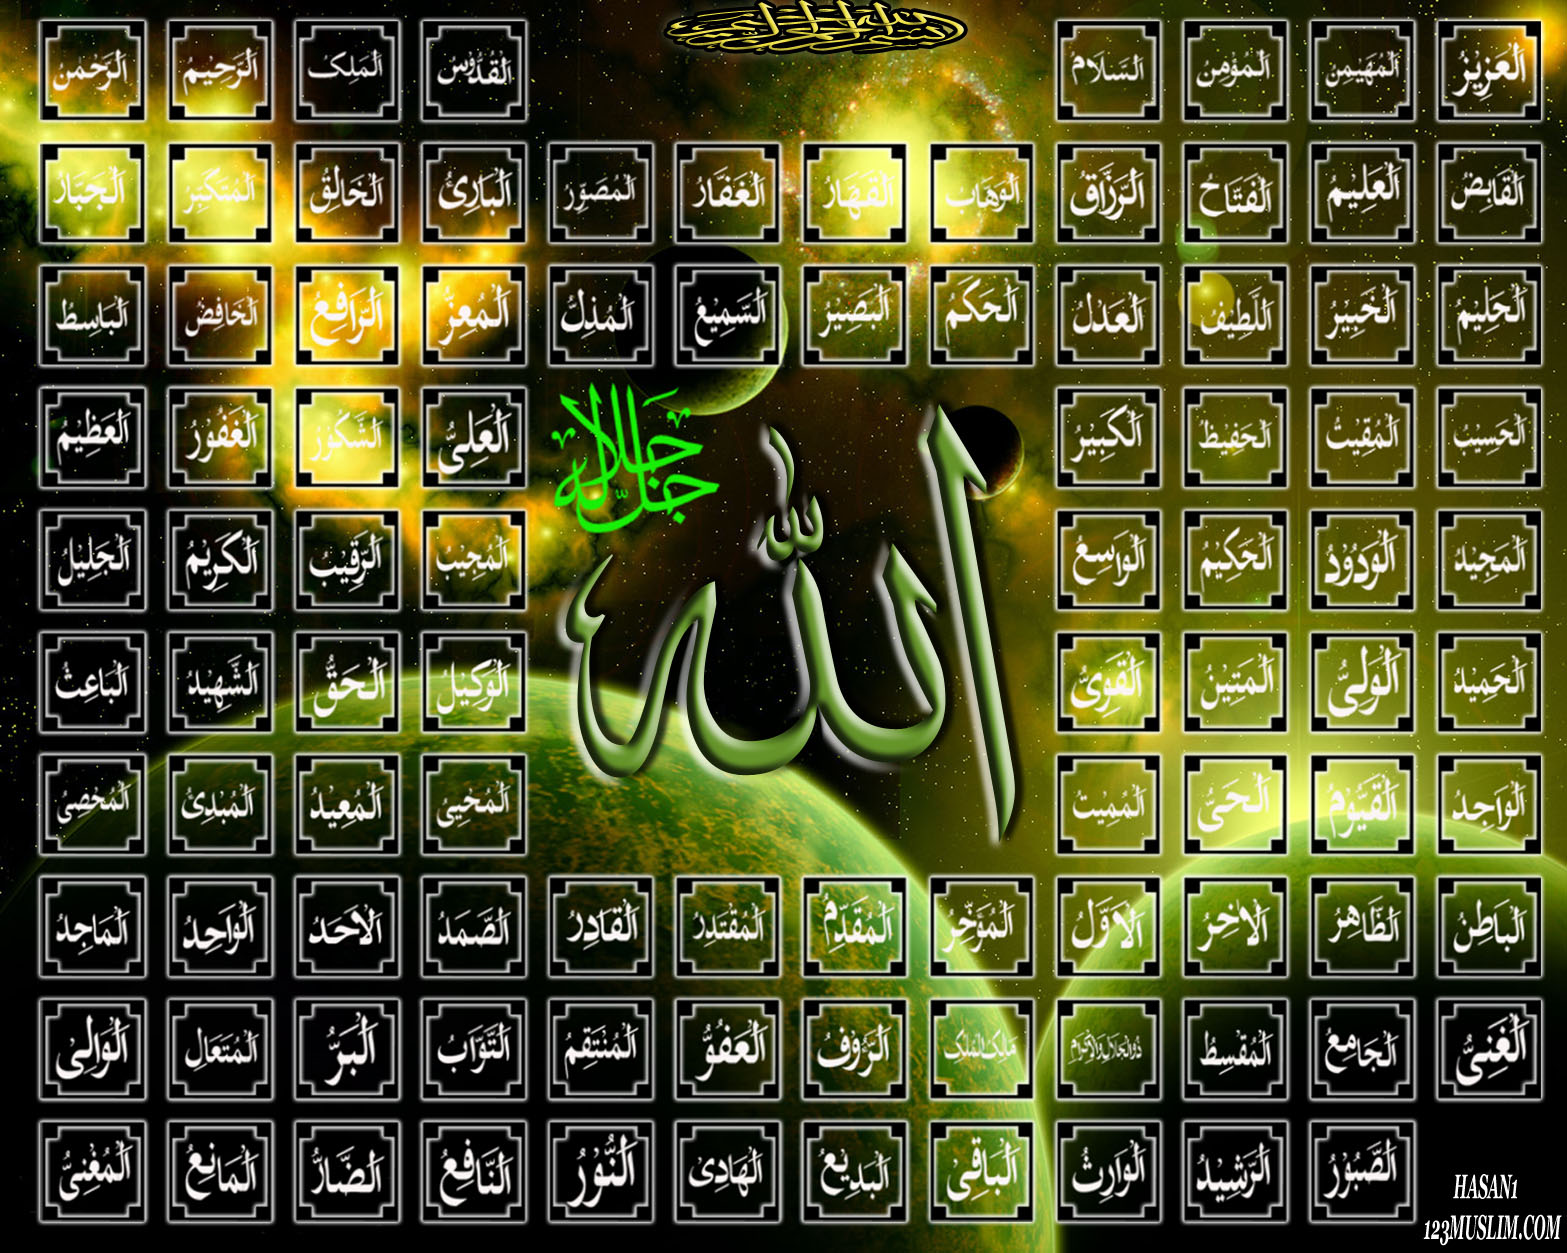 99 Names Of Allah - Beautiful 99 Names Of Allah - 1567x1253 Wallpaper -  